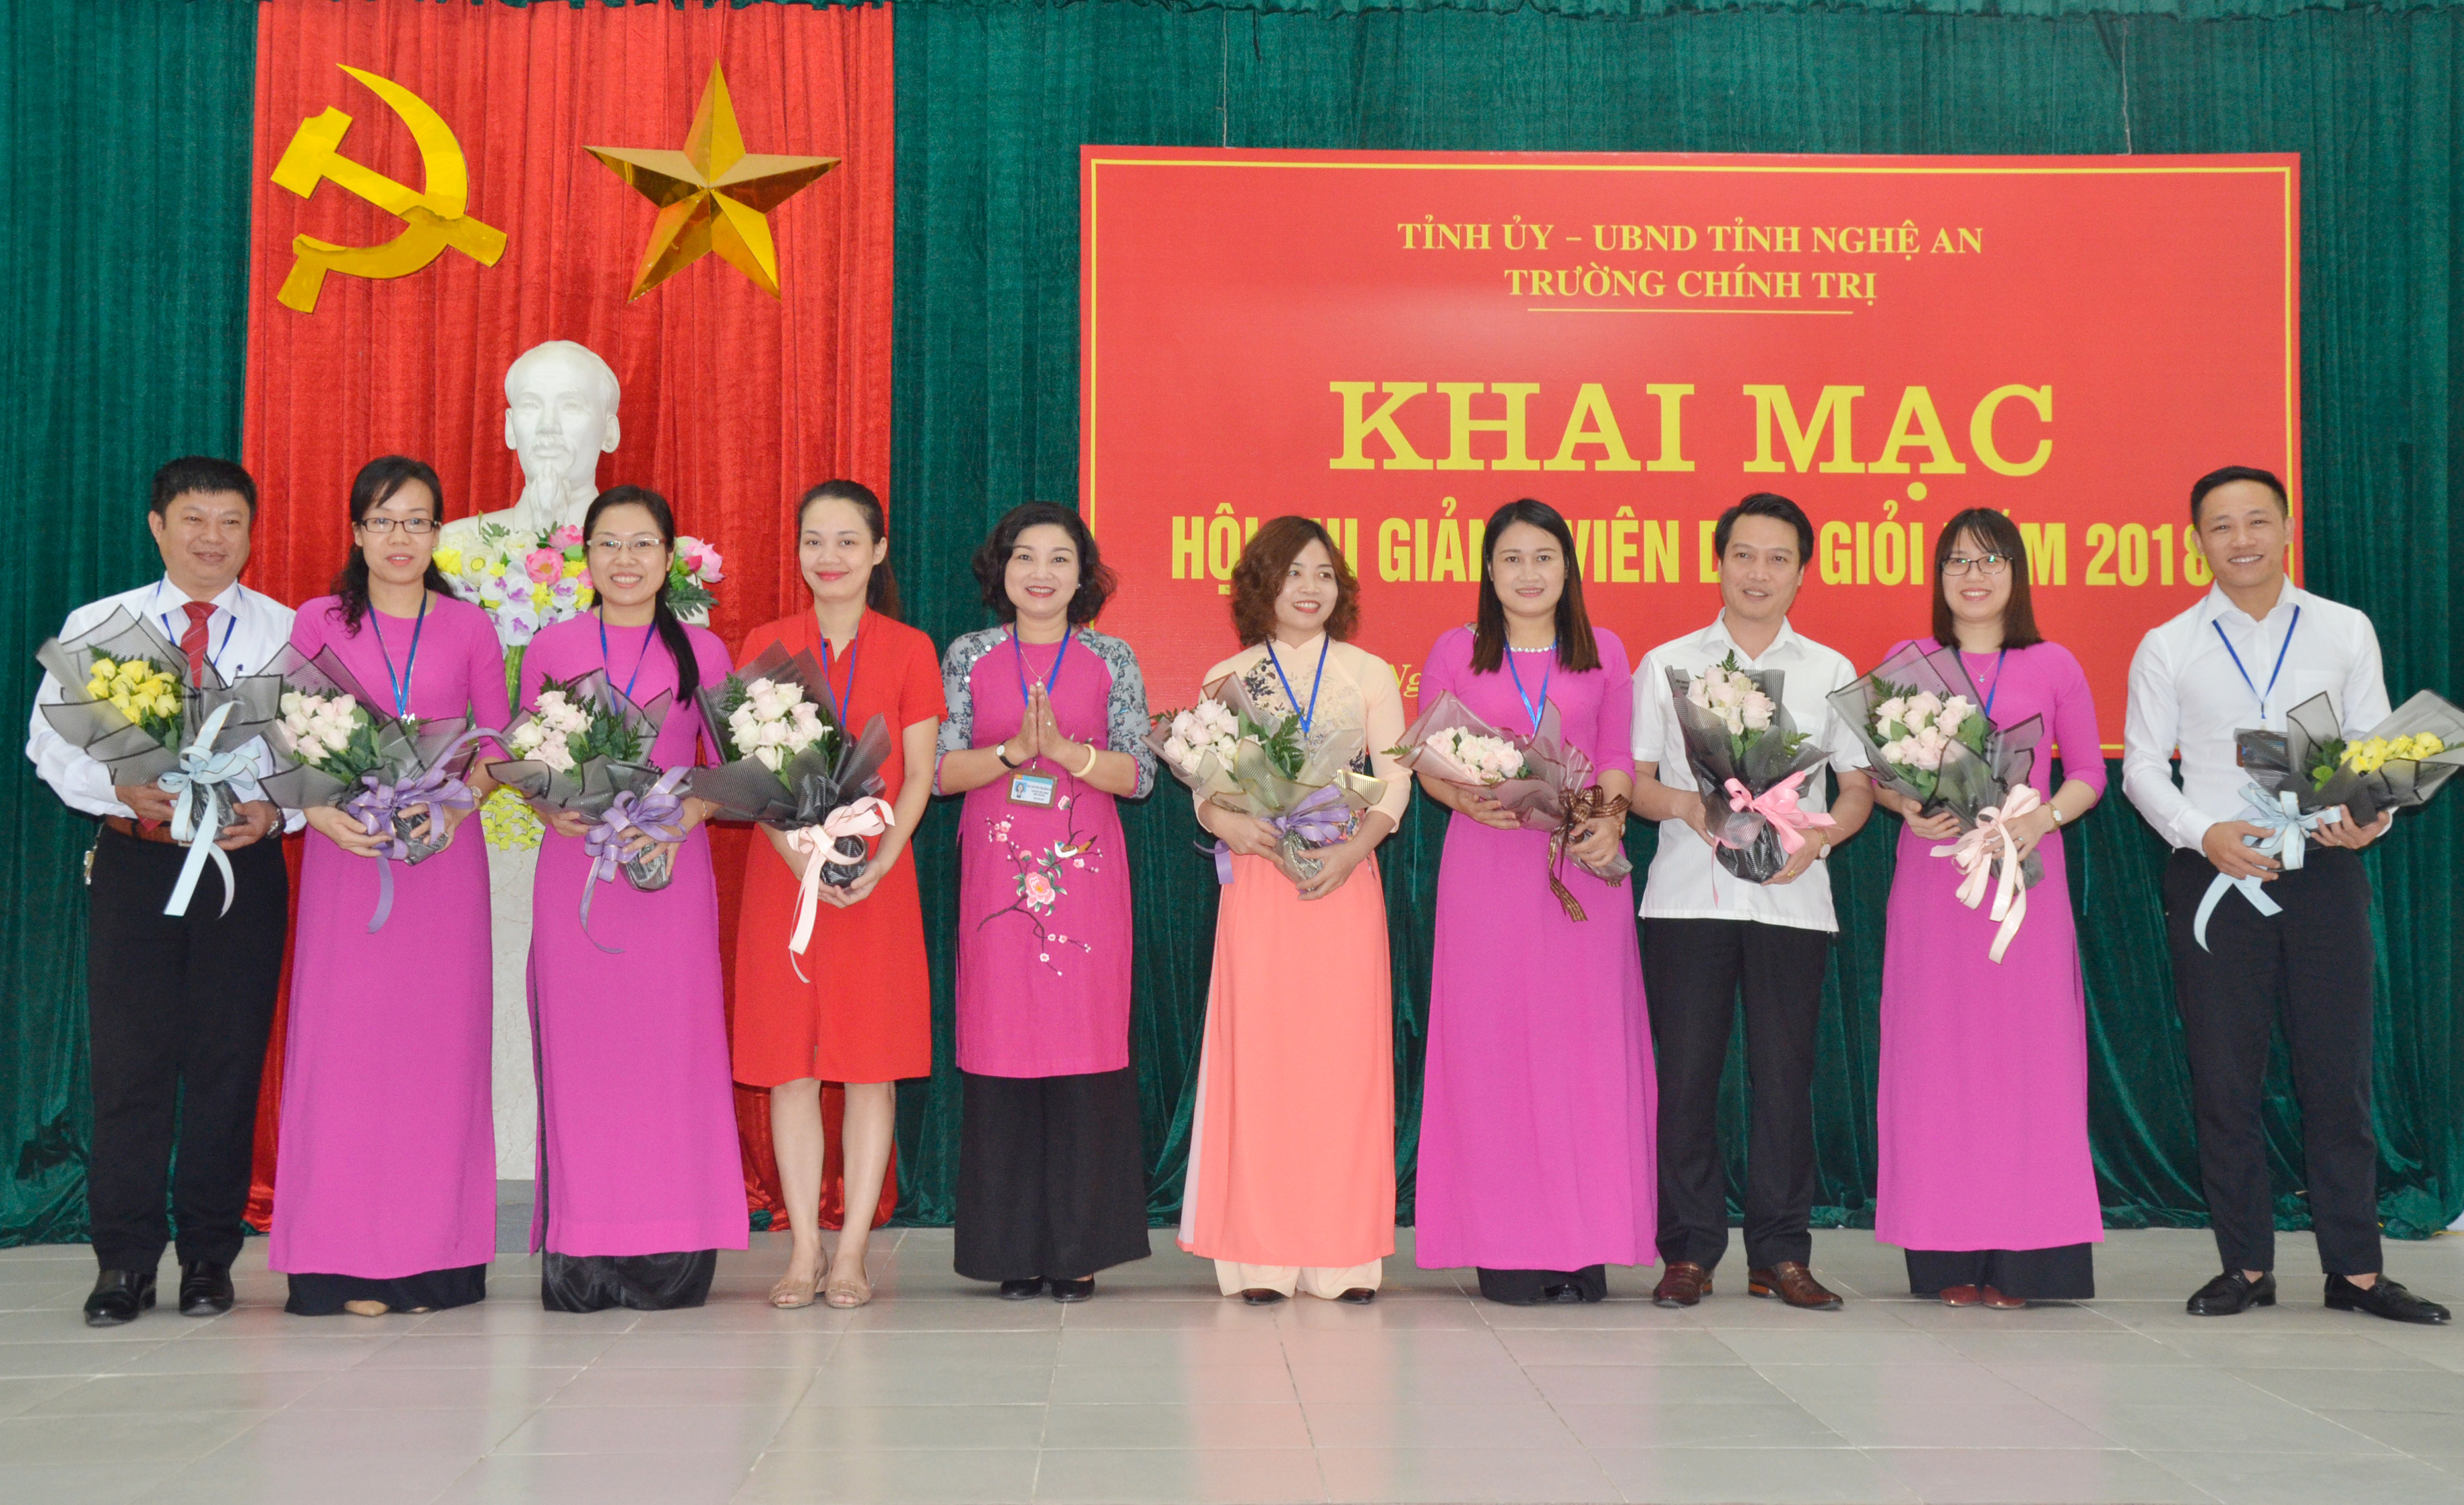 Lãnh đạo Trường Chính trị tặng hoa chúc mừng các thí sinh dự thi. Ảnh Thanh Lê